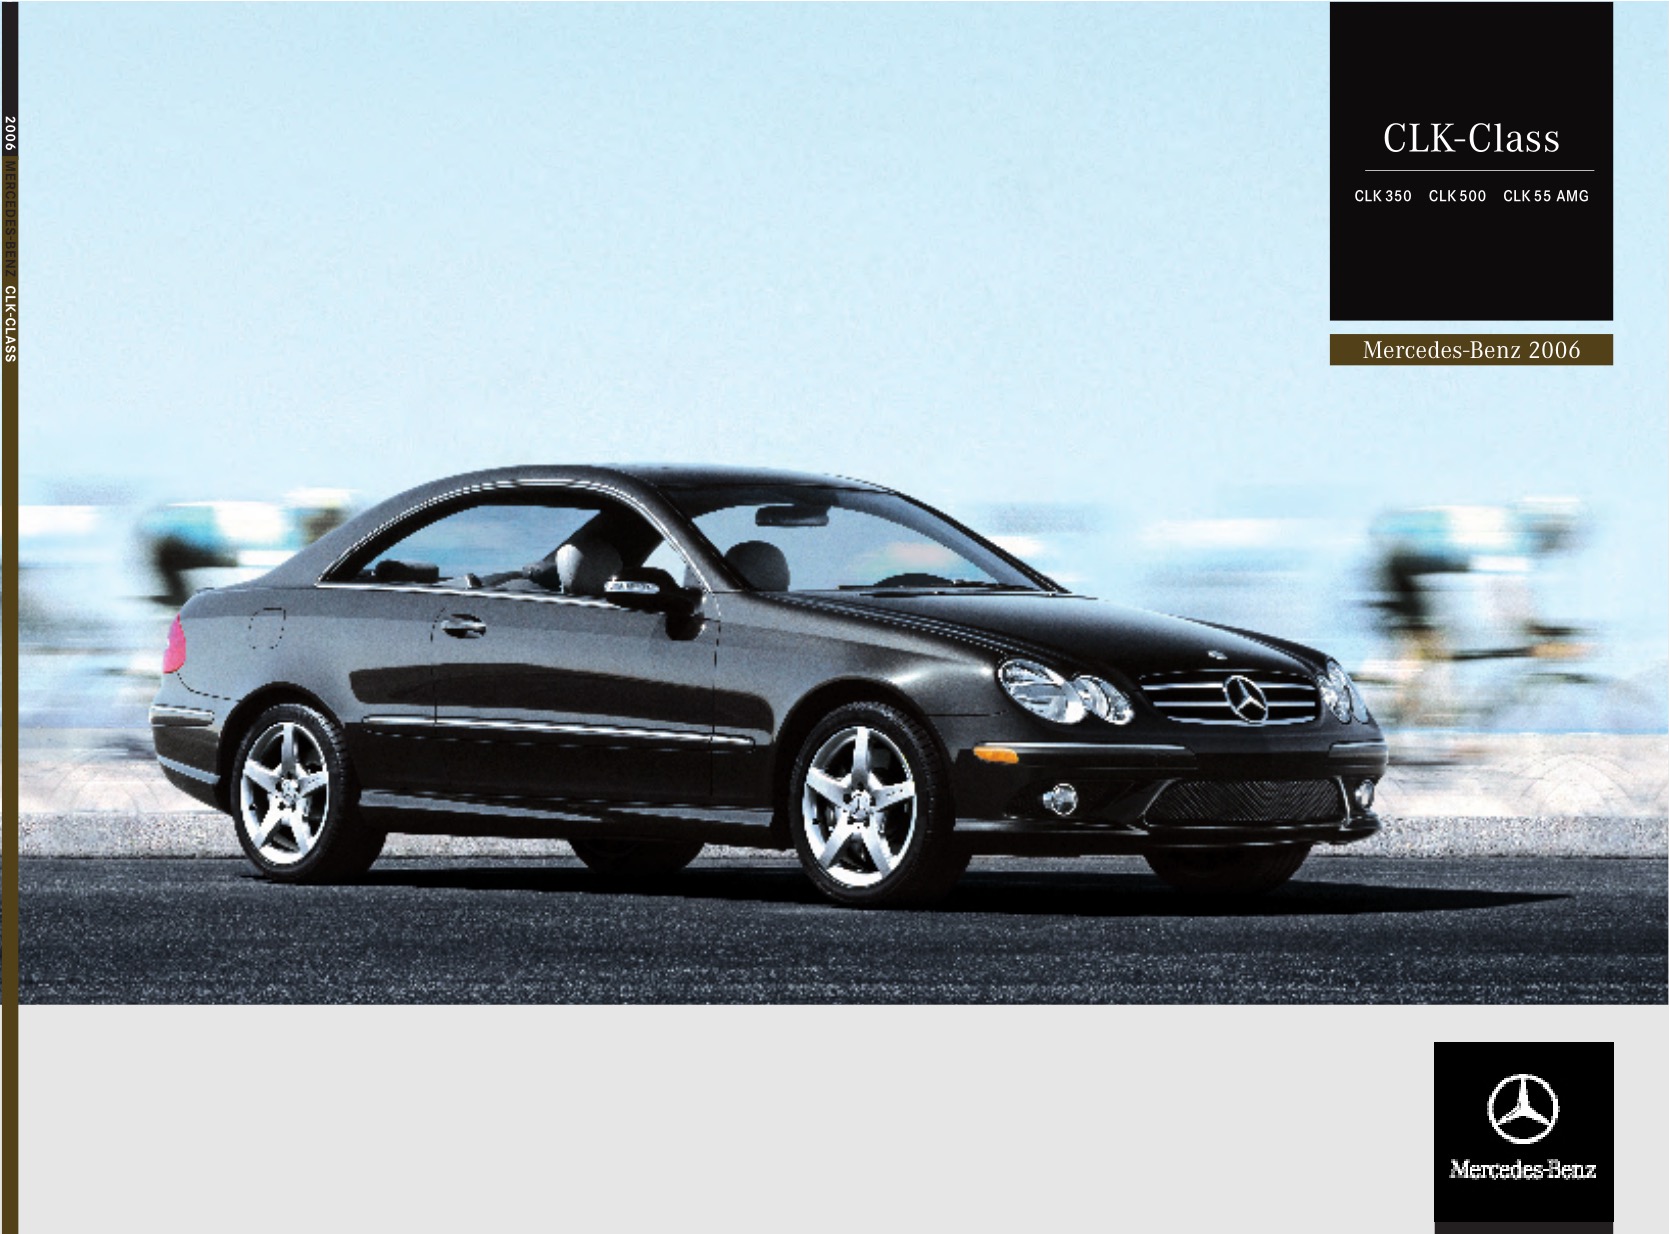 2006 Mercedes-Benz CLK-Class Brochure